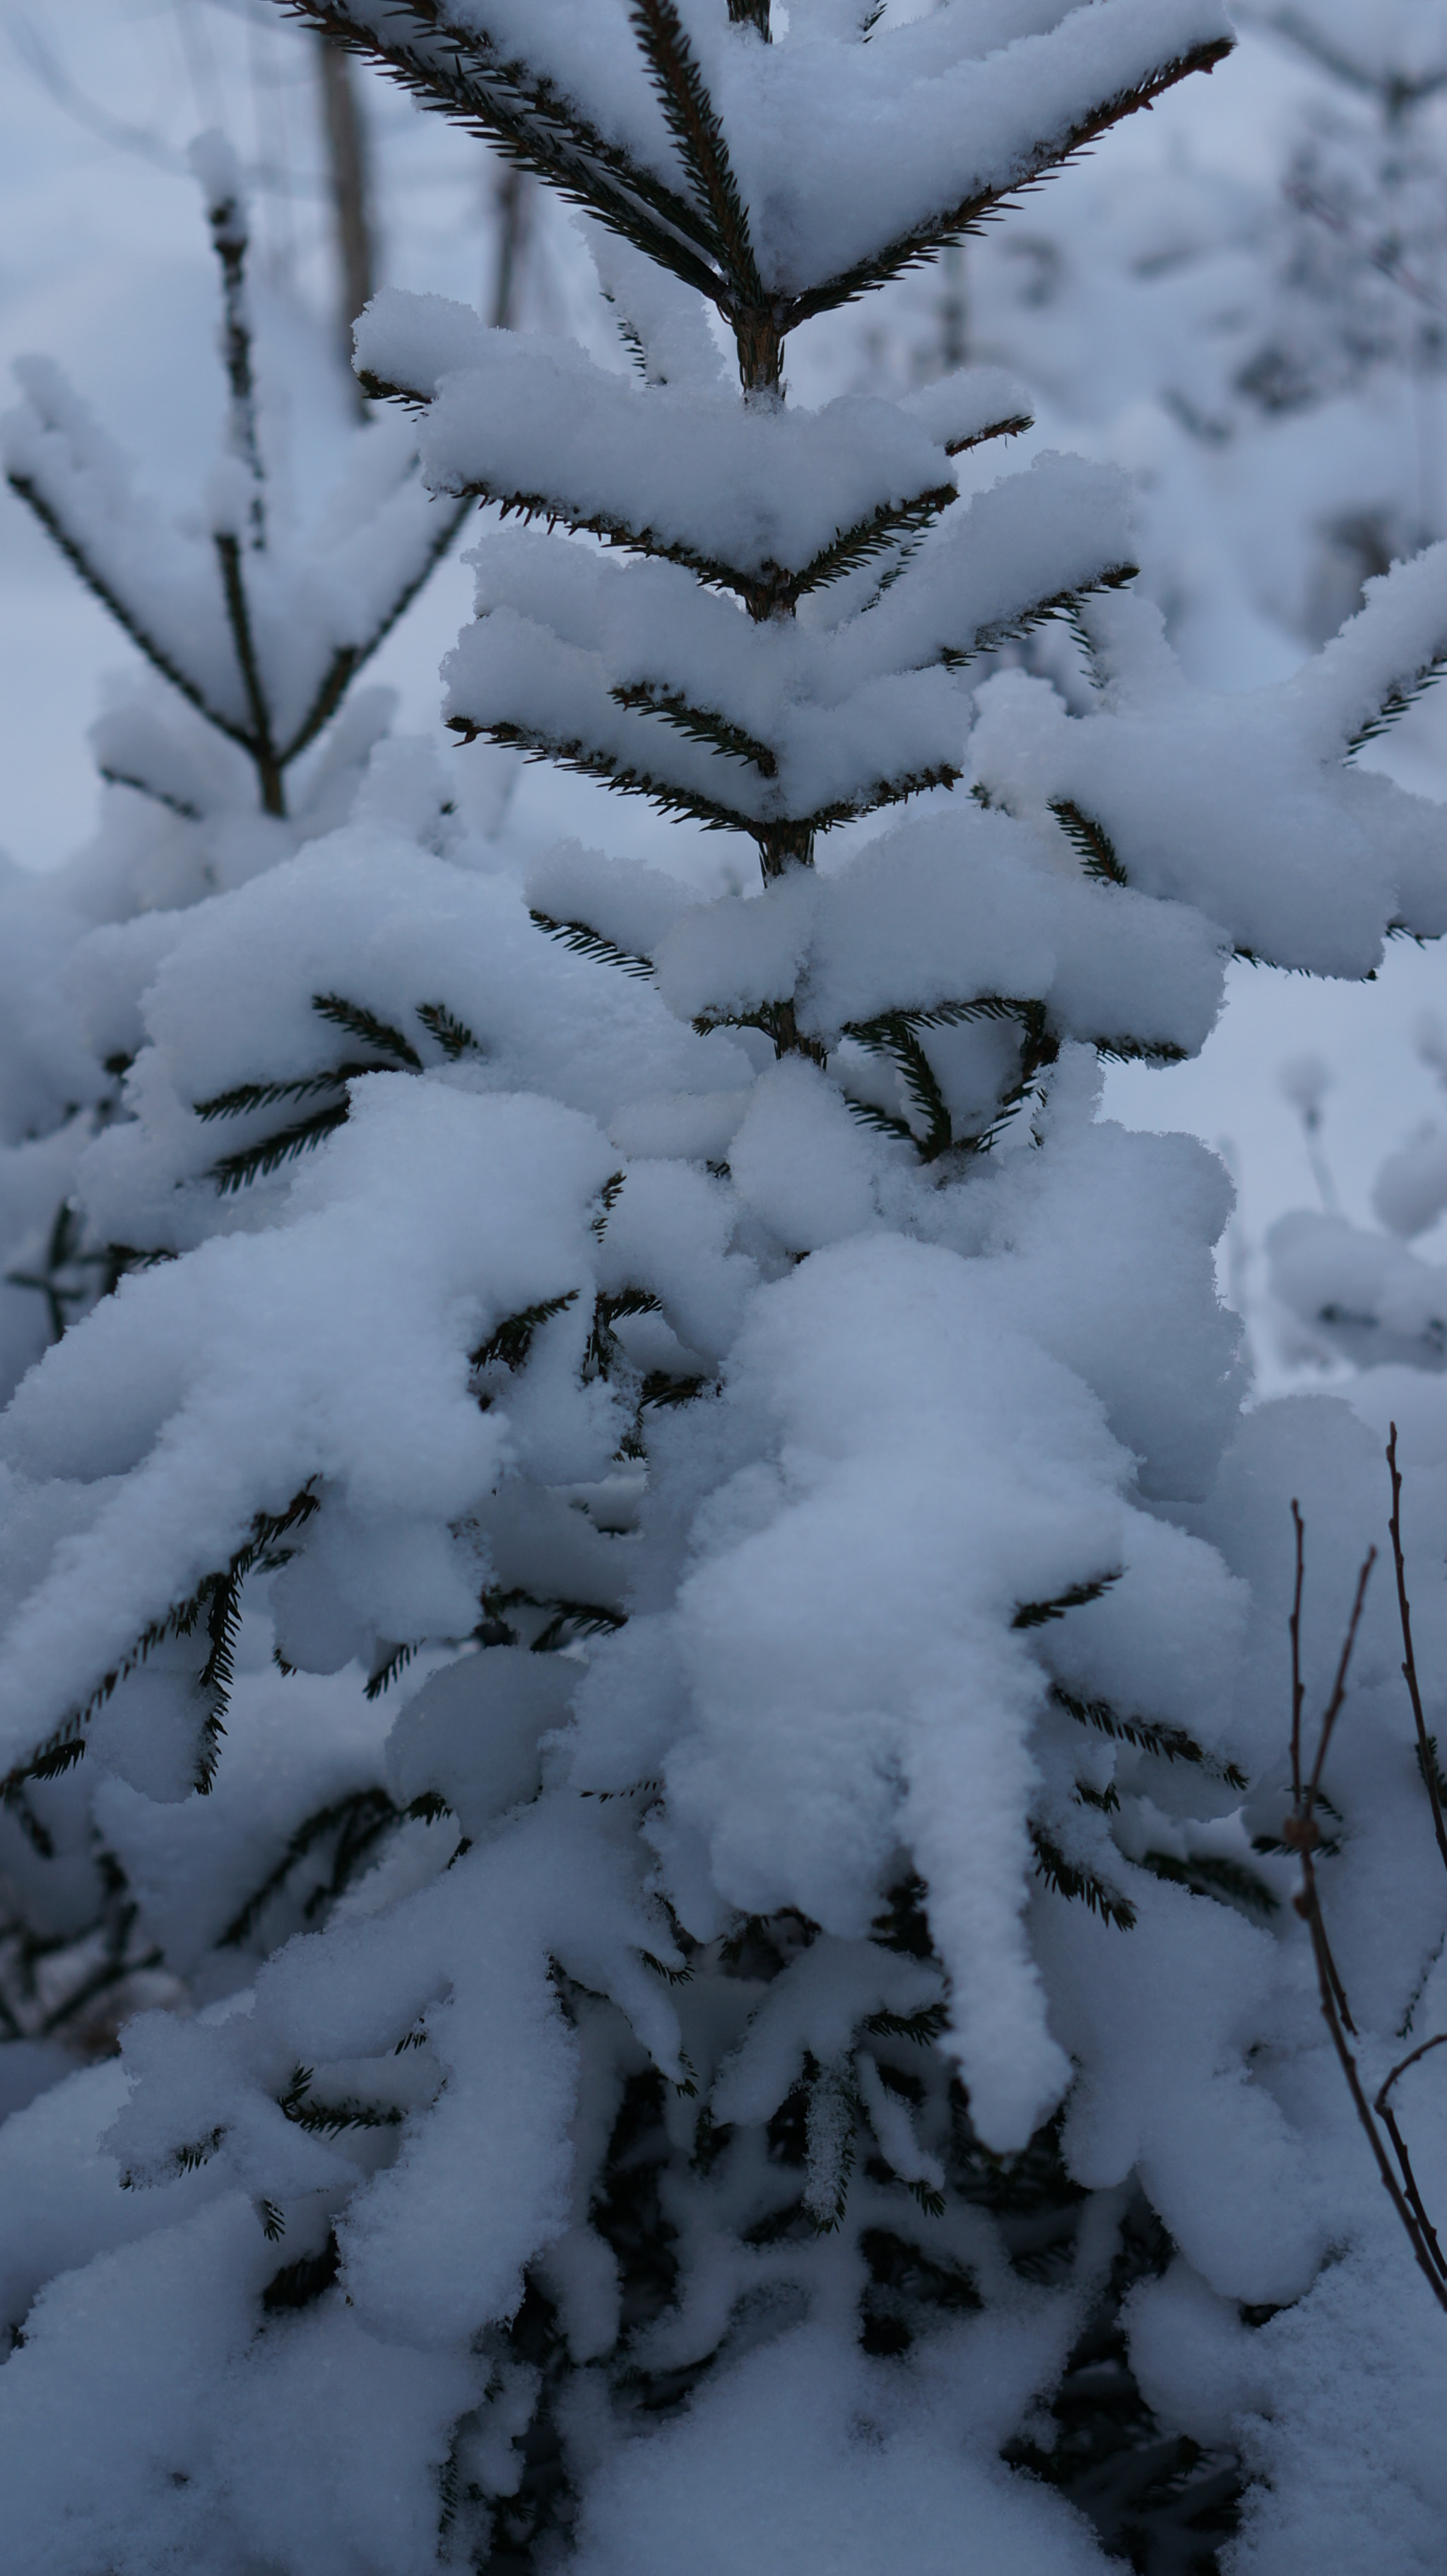 Sony Alpha NEX-6 + Sony E 50mm F1.8 OSS sample photo. Tree in snow photography